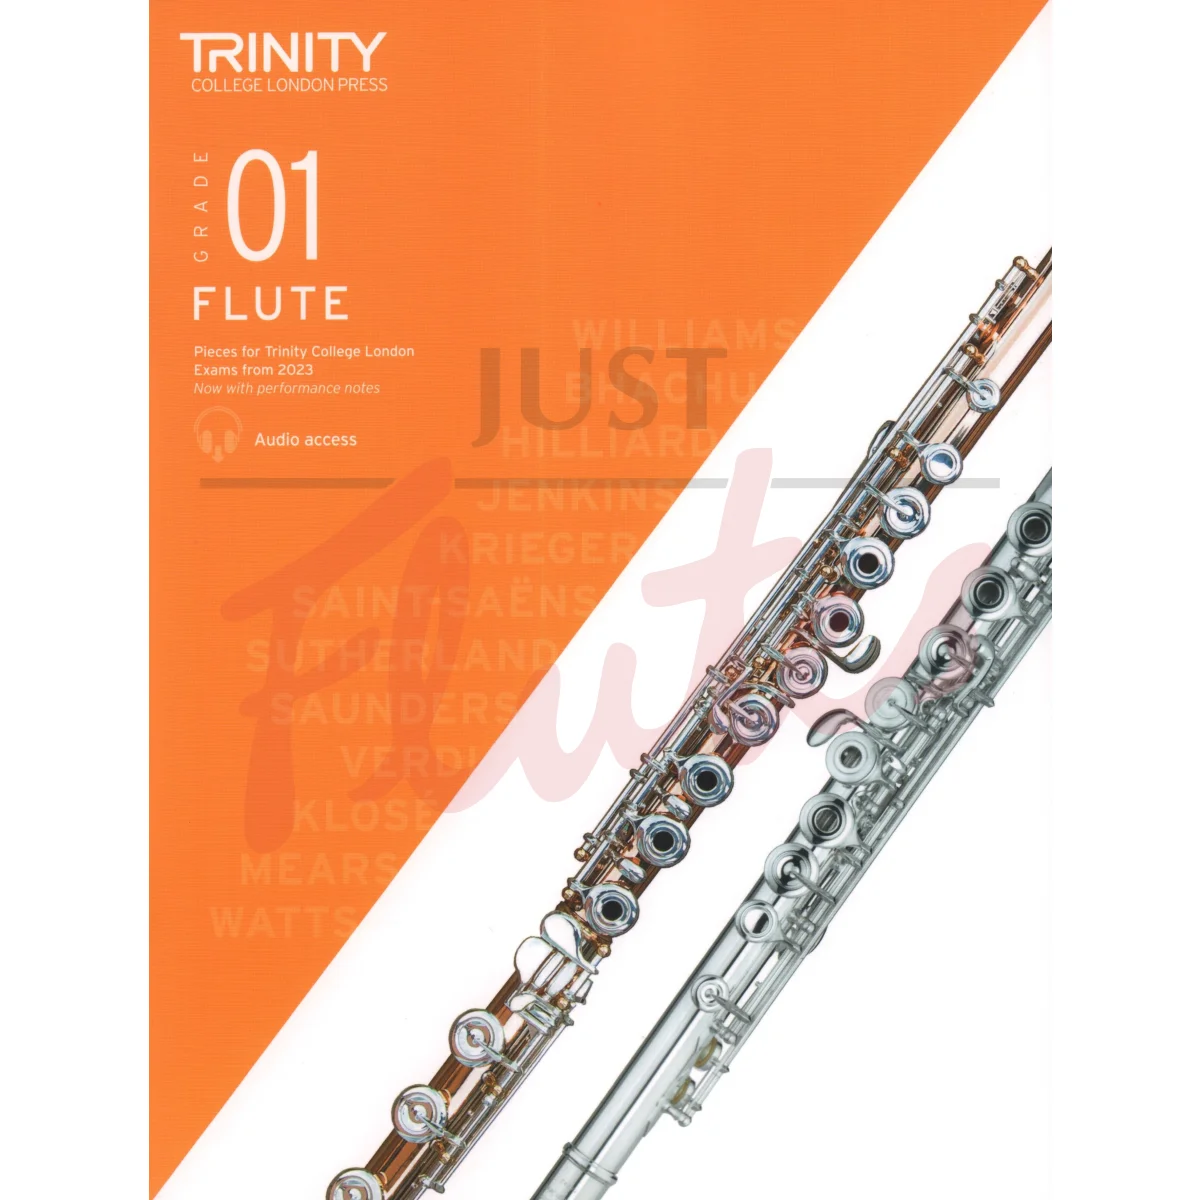 Trinity Flute Exam Pieces from 2023, Grade 1